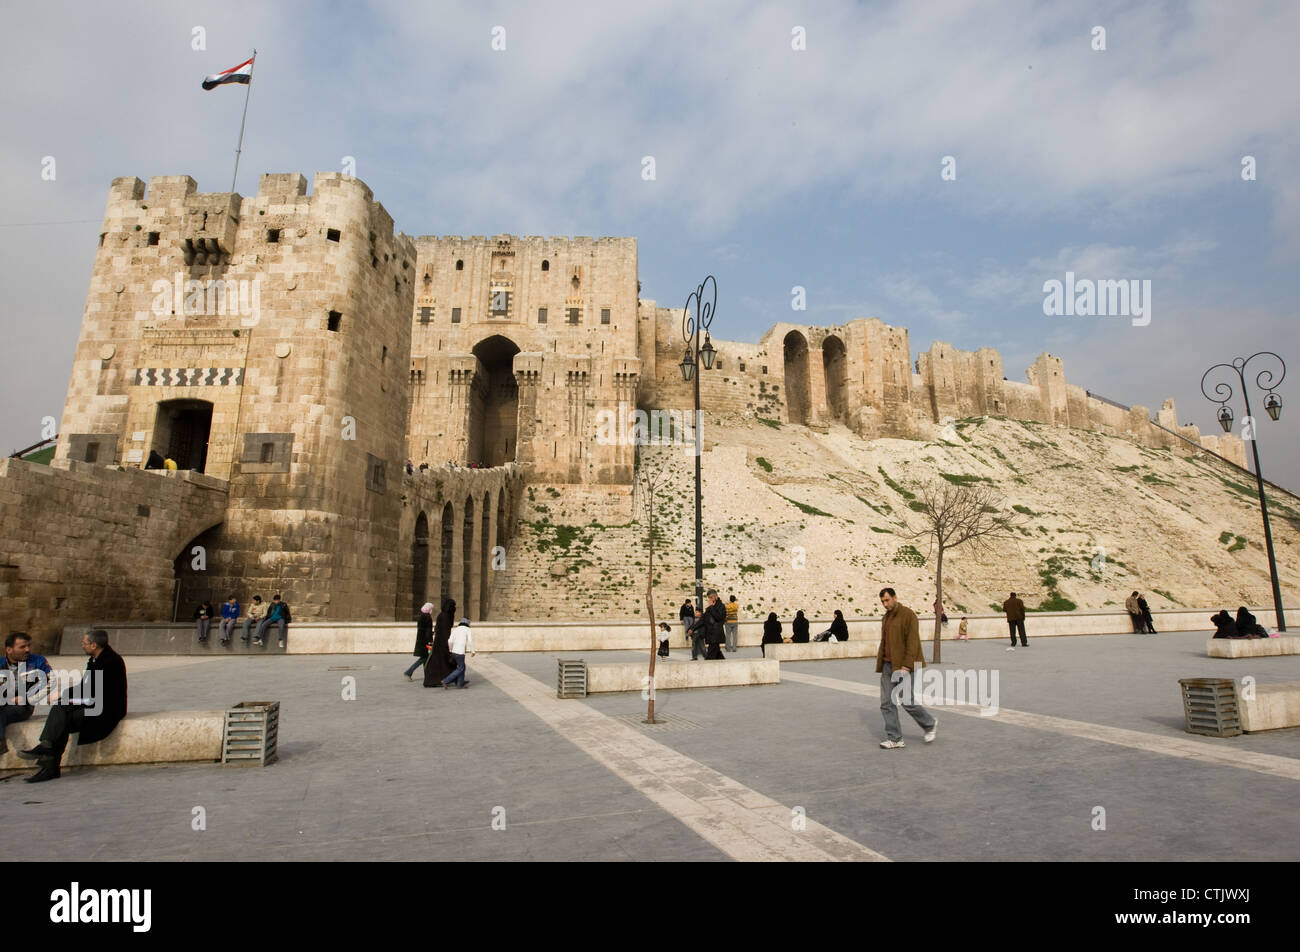 Des gens assis et en passant devant la porte d'entrée à la Citadelle d'Alep, Syrie Banque D'Images